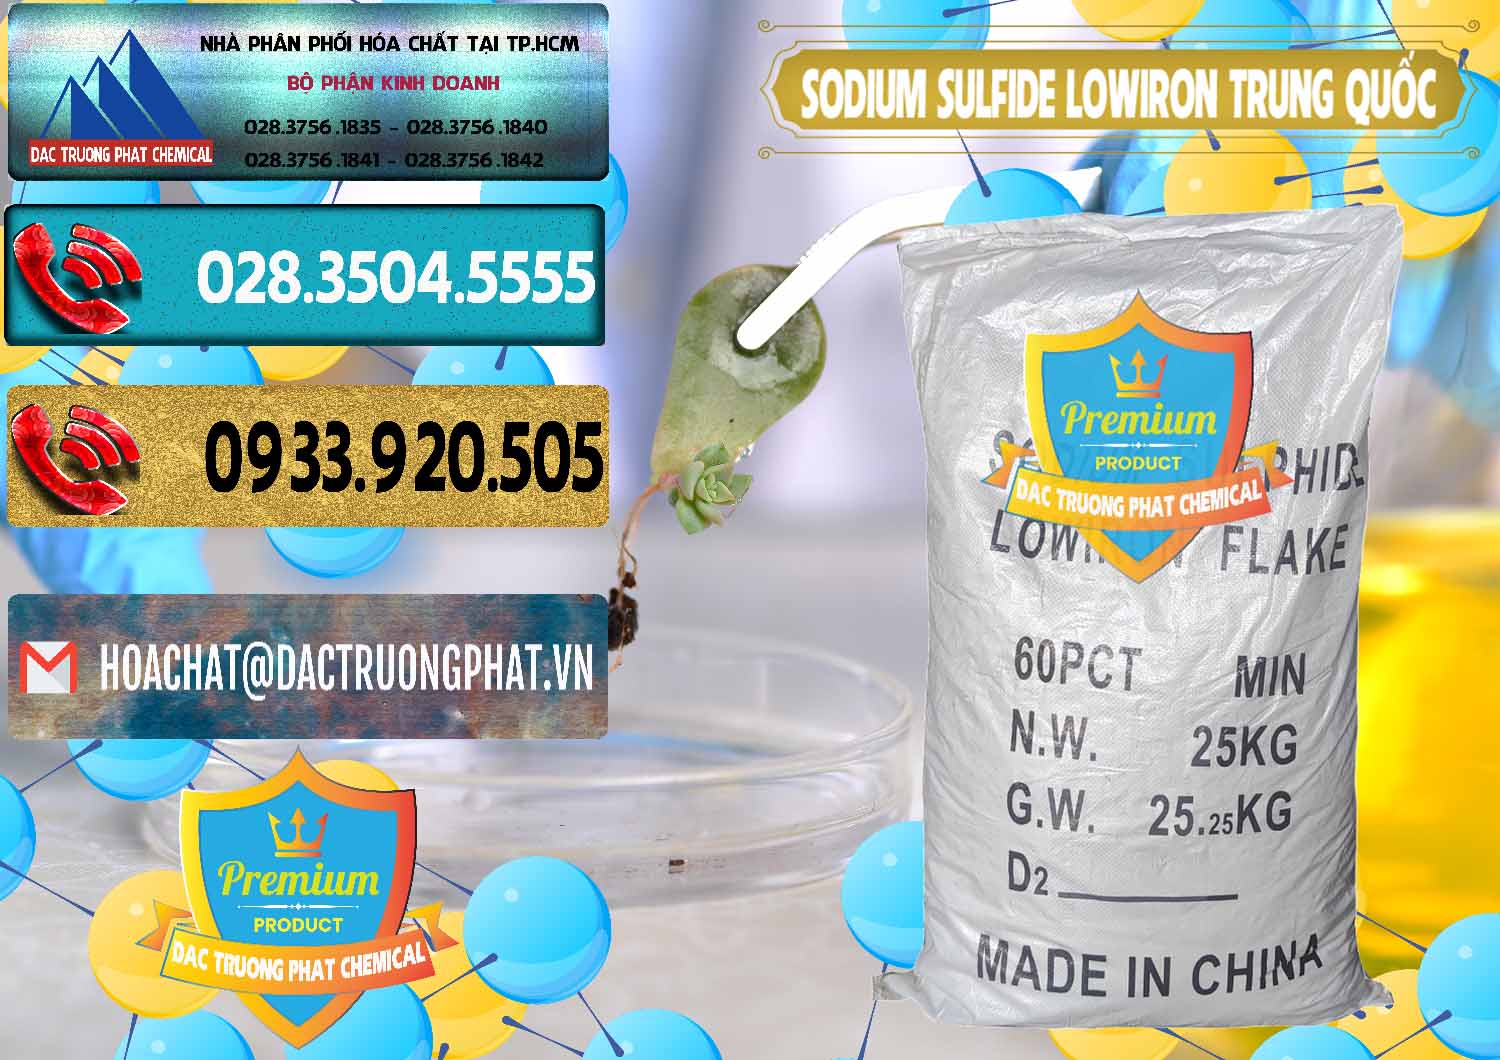 Chuyên nhập khẩu và bán Sodium Sulfide NA2S – Đá Thối Lowiron Trung Quốc China - 0227 - Nơi chuyên bán ( cung cấp ) hóa chất tại TP.HCM - hoachatdetnhuom.com